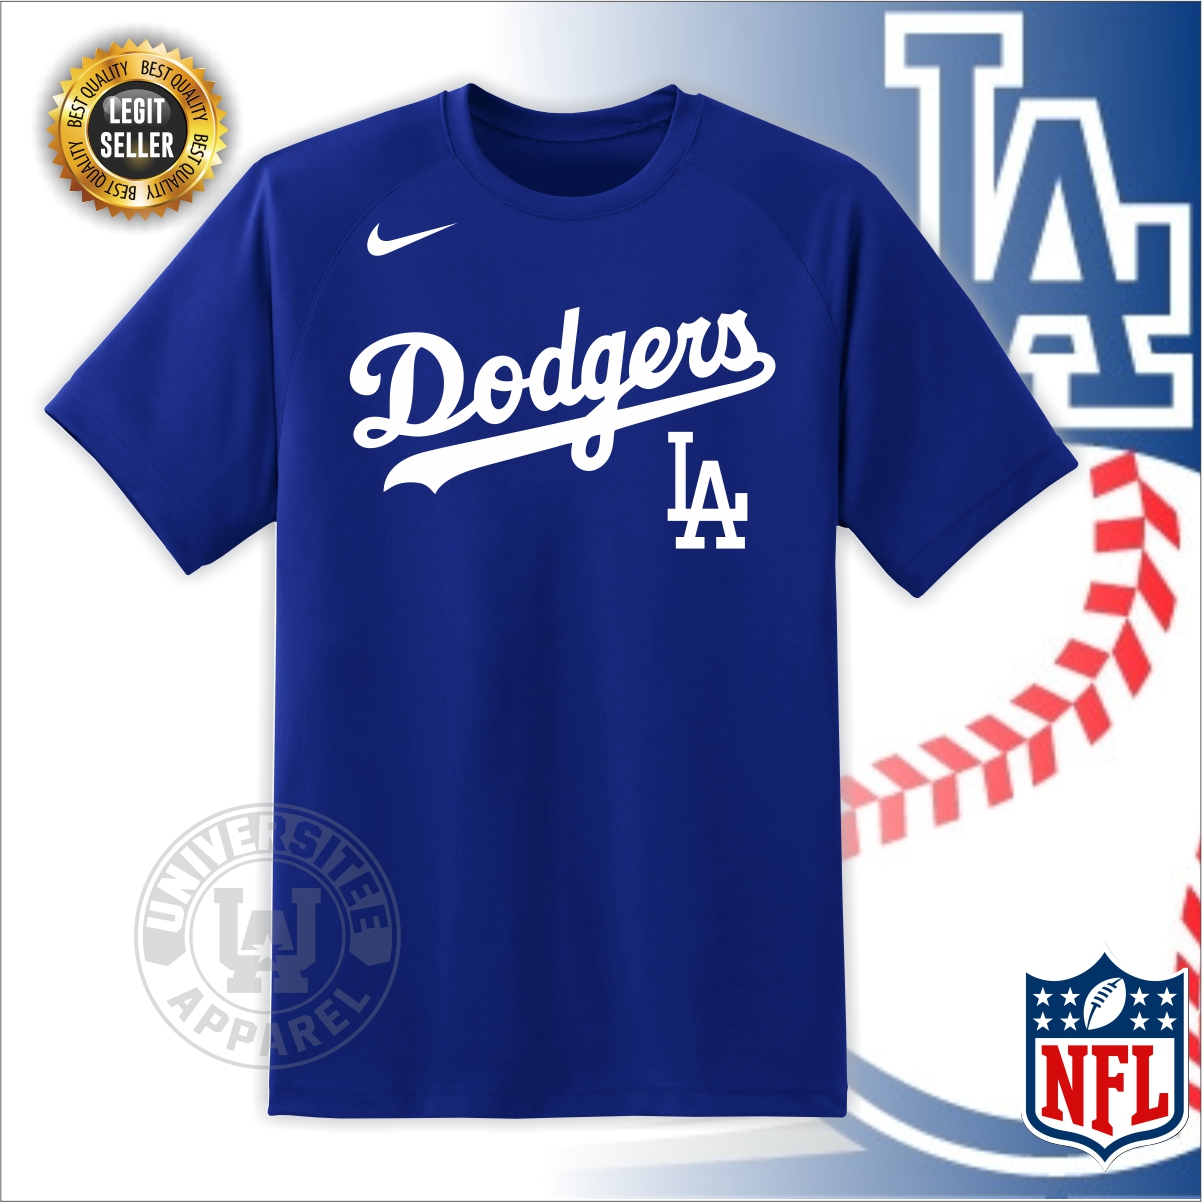 New Era MLB LA Dodgers infill tshirt in blue exclusive at ASOS  ASOS